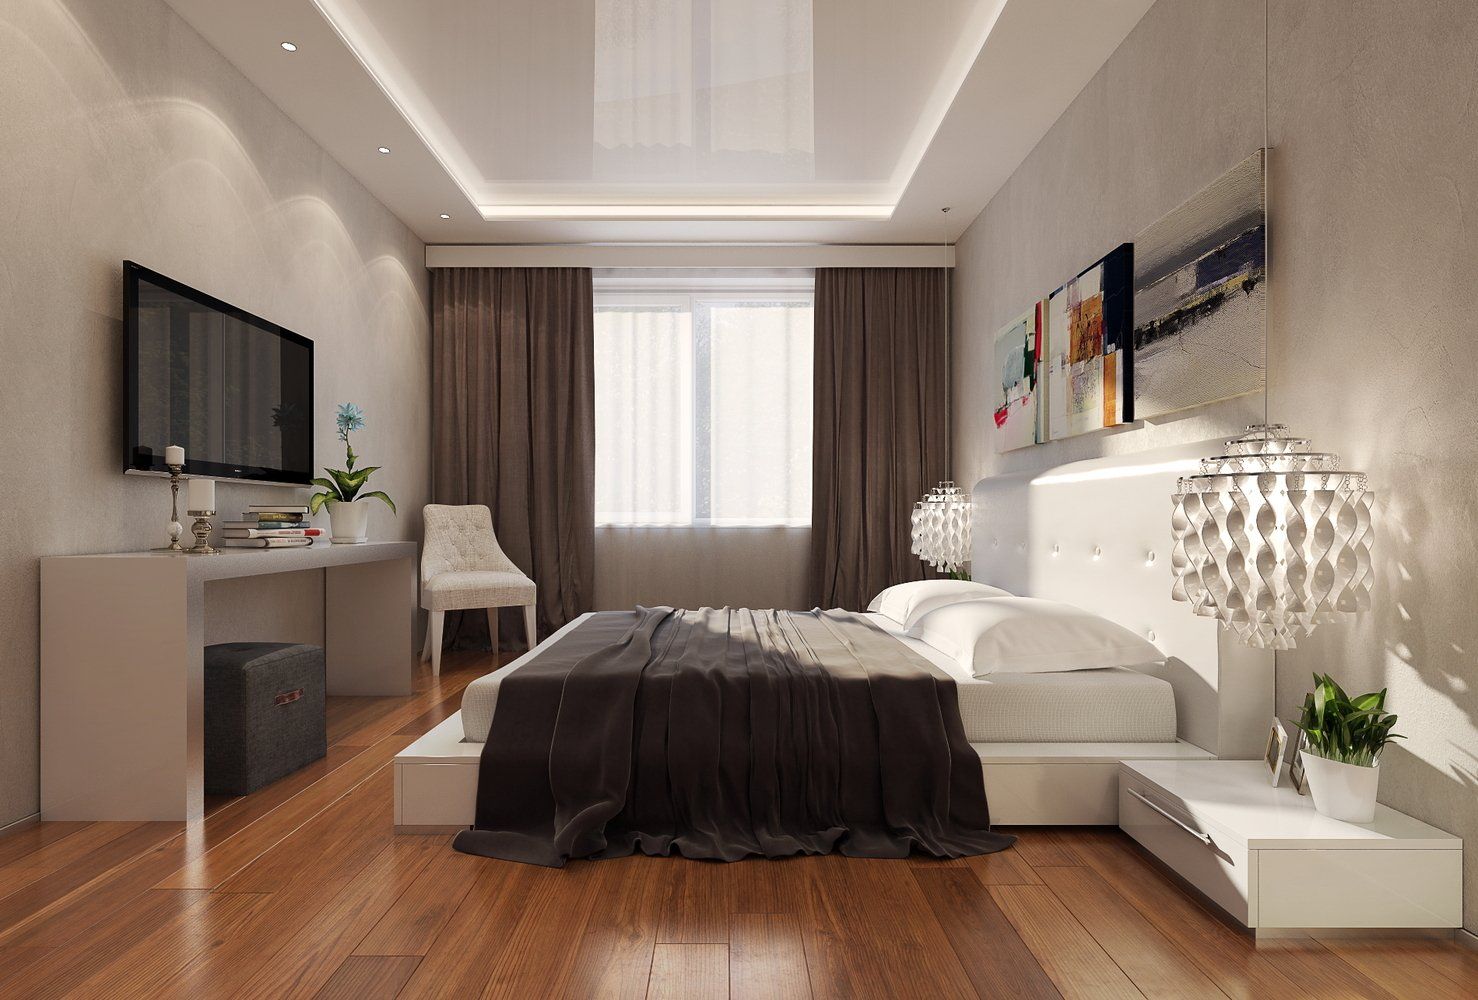 10 способов визуально приподнять потолок :: Дизайн :: РБК Недвижимость